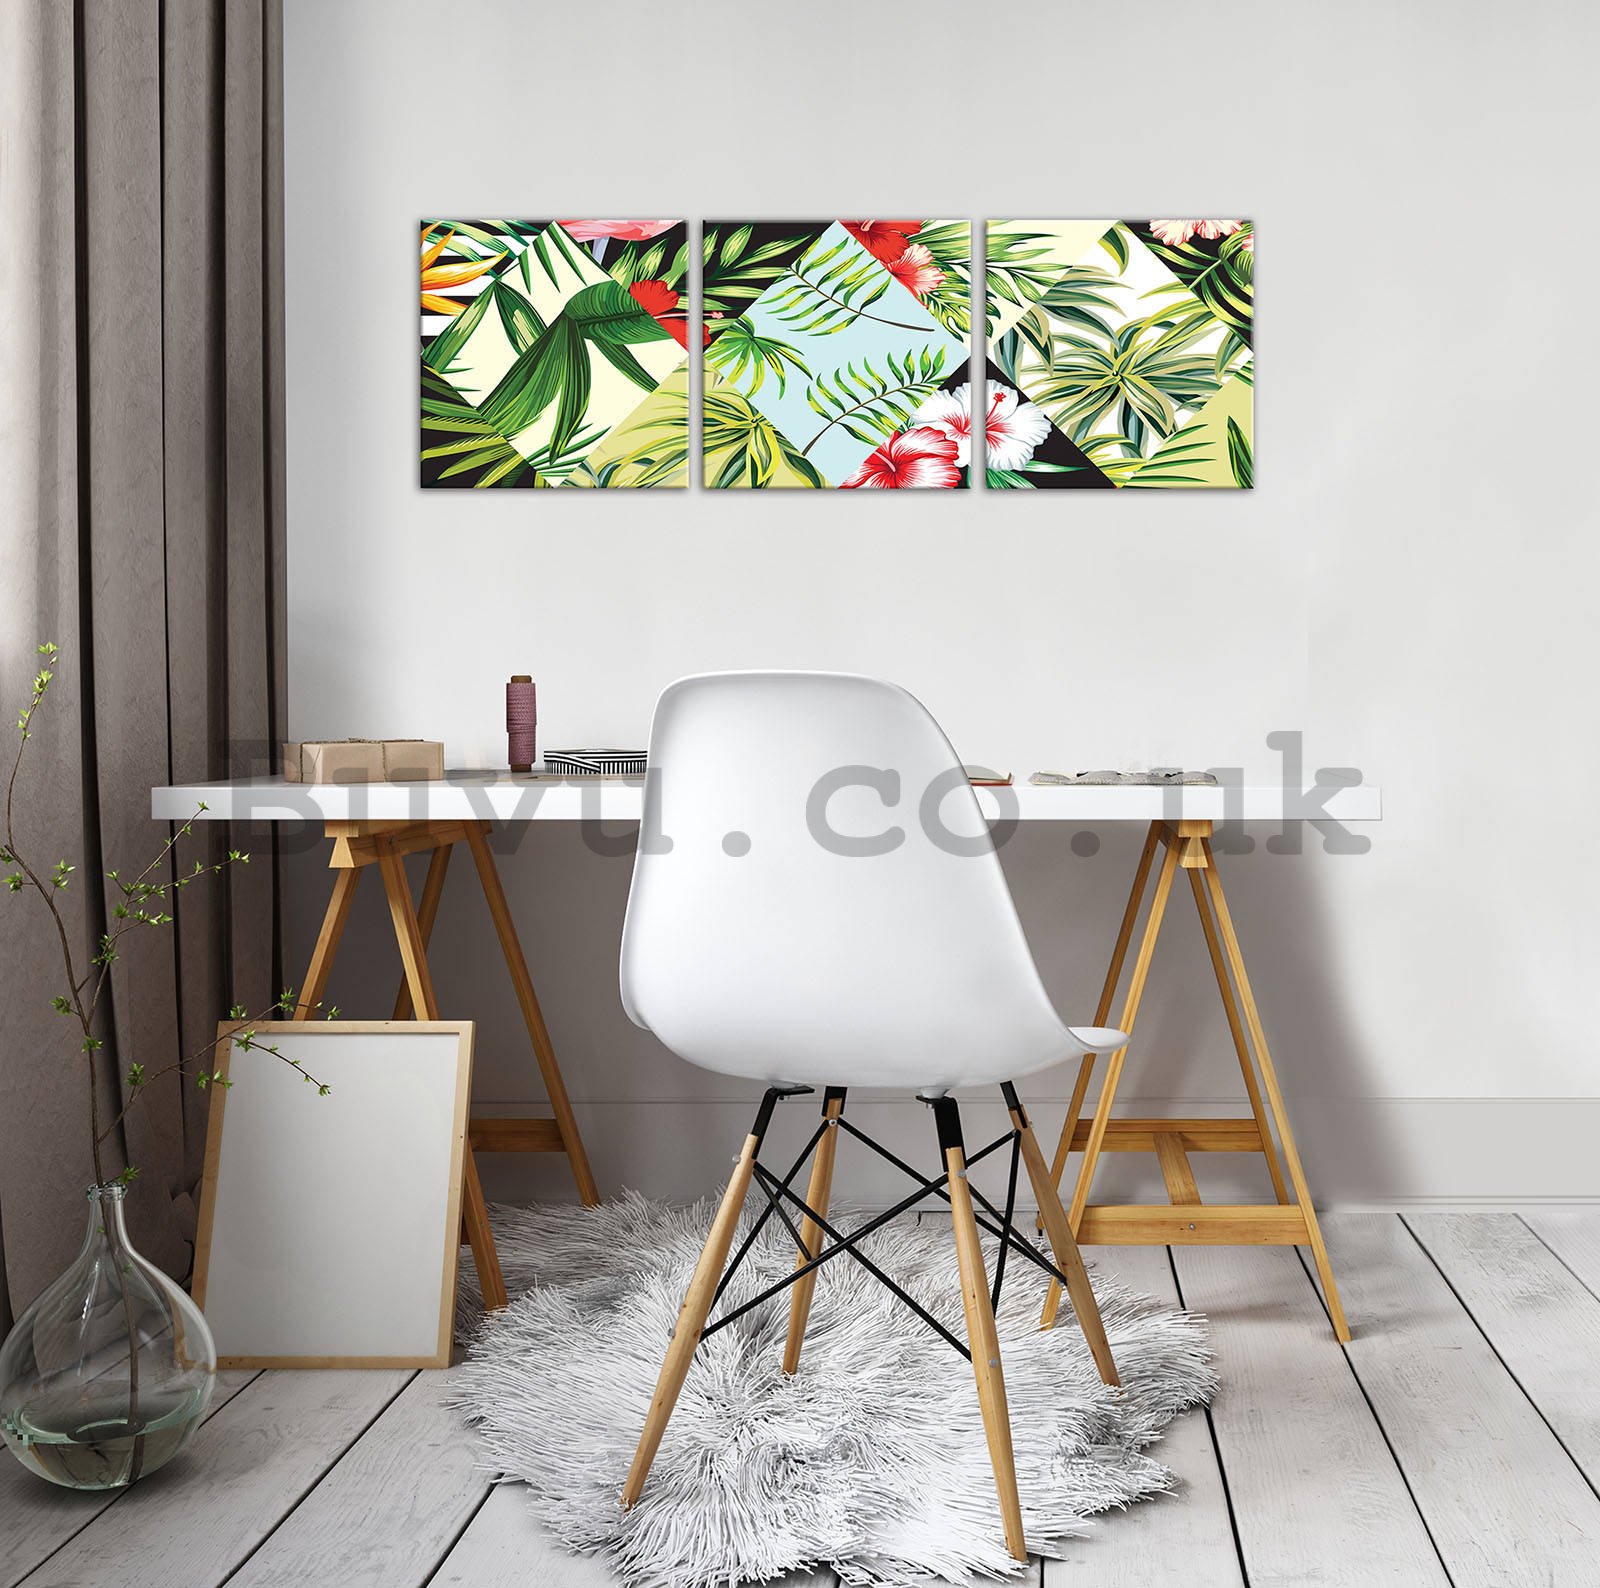 Painting on canvas: Painted tropical flora (1) - set 3pcs 25x25cm